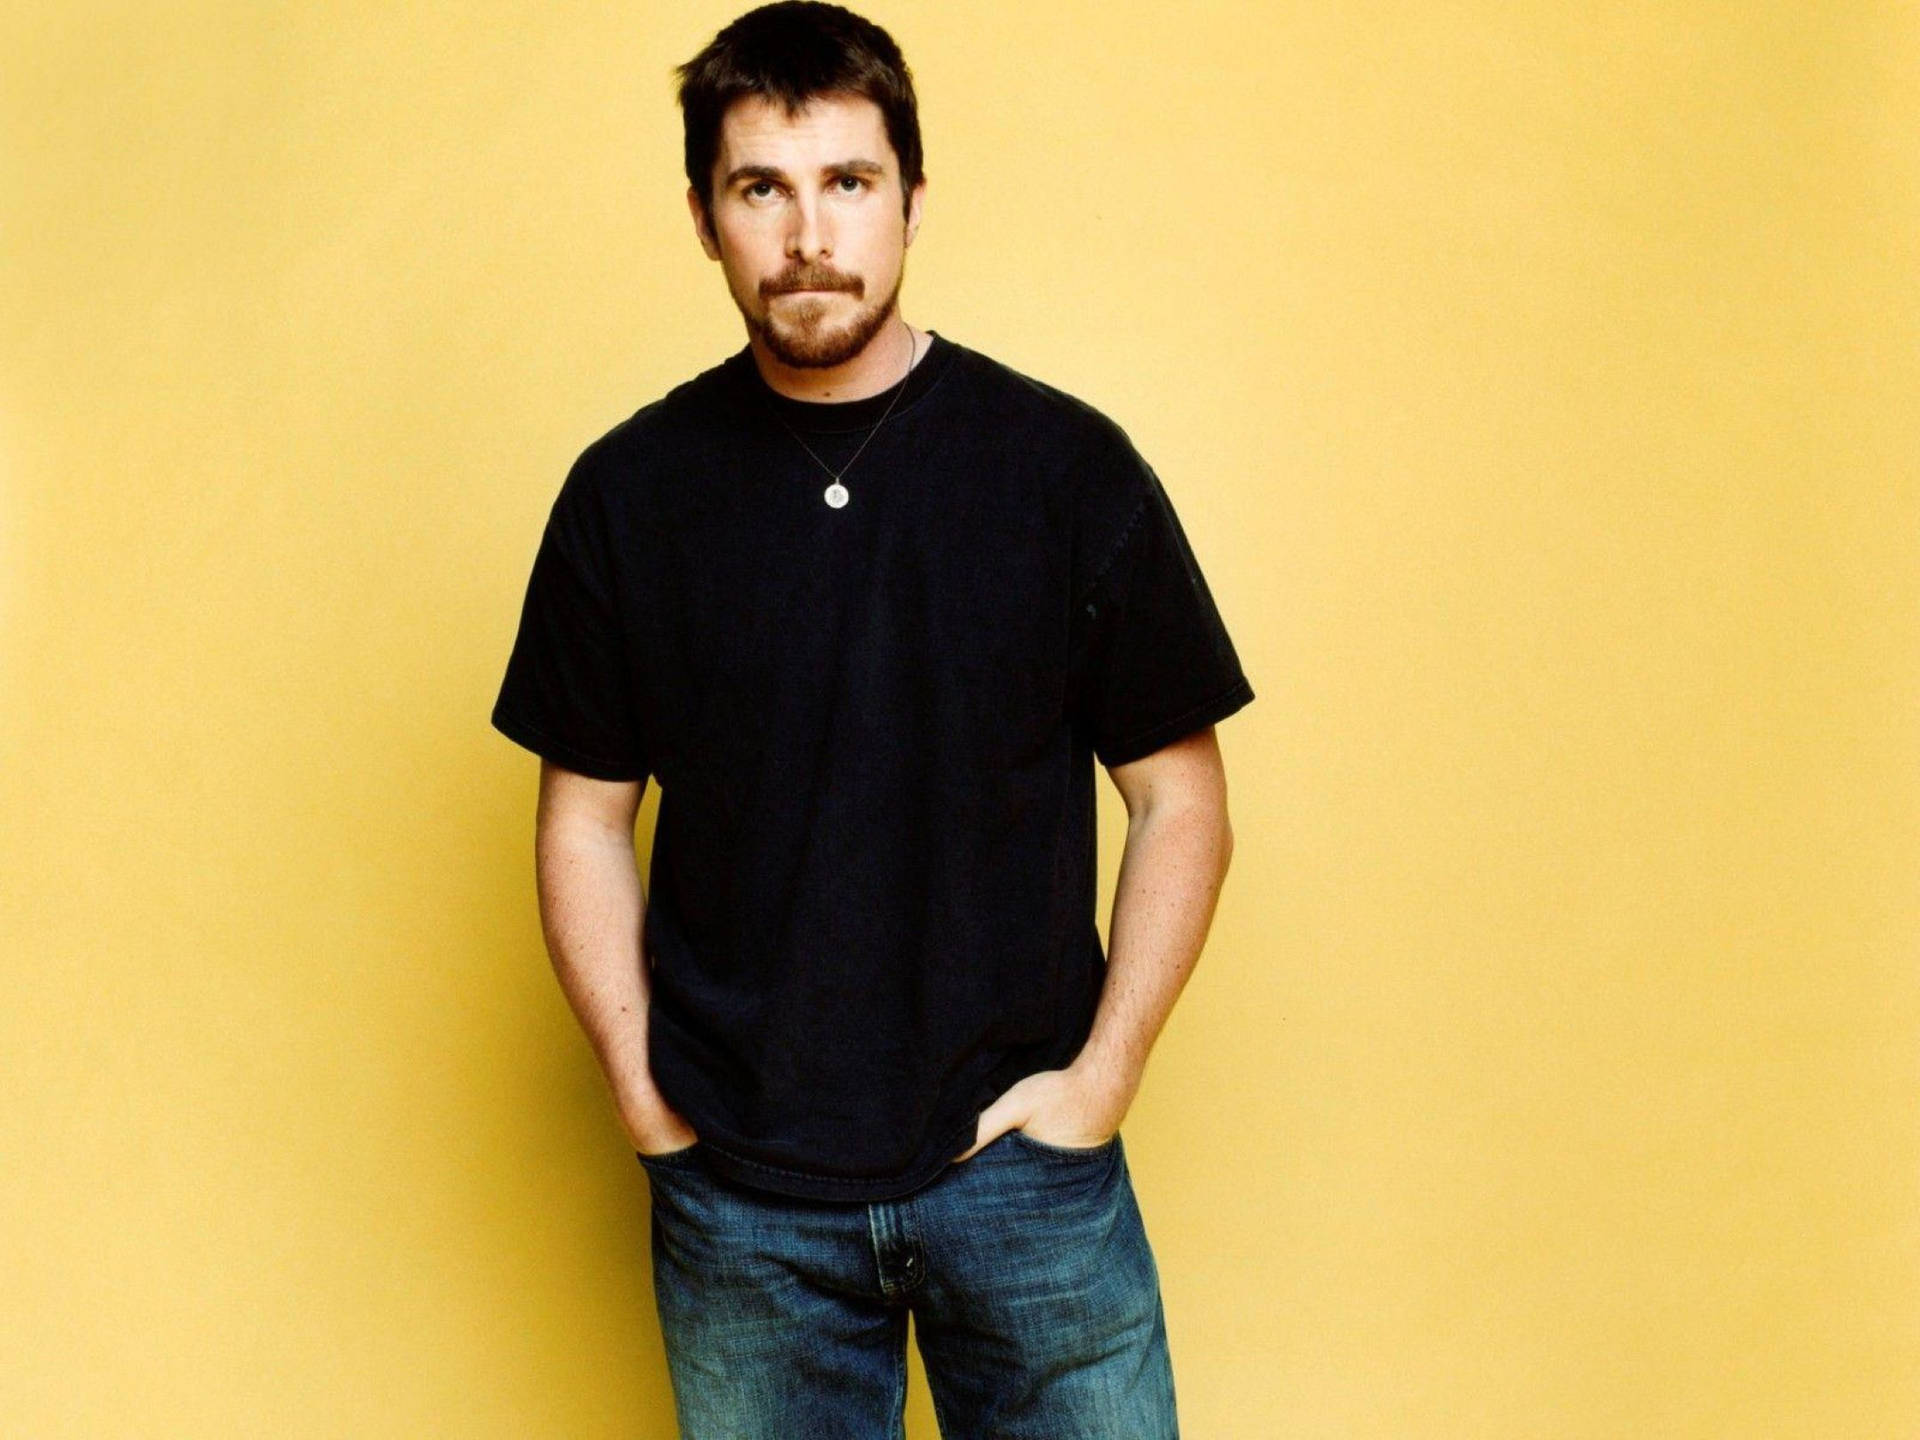 Christian Bale Batman Actor Picture